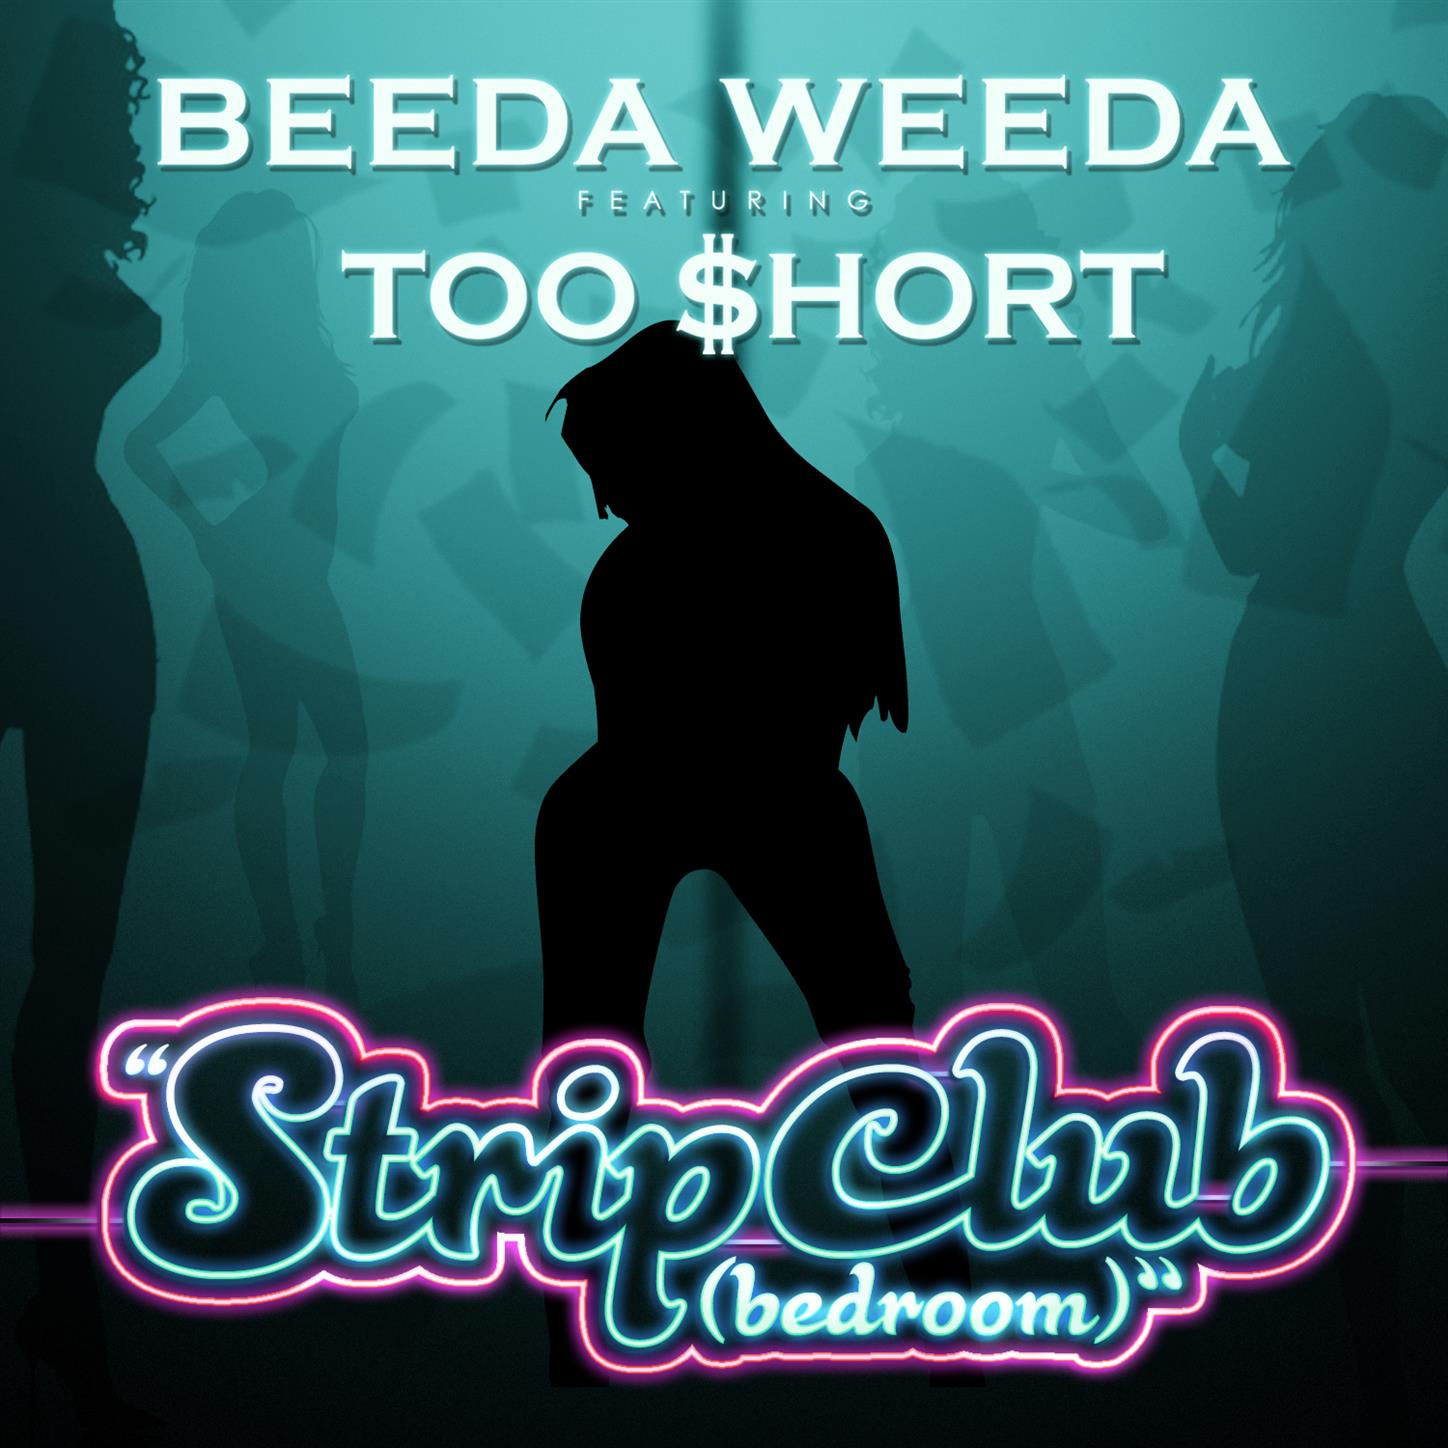 Strip Club